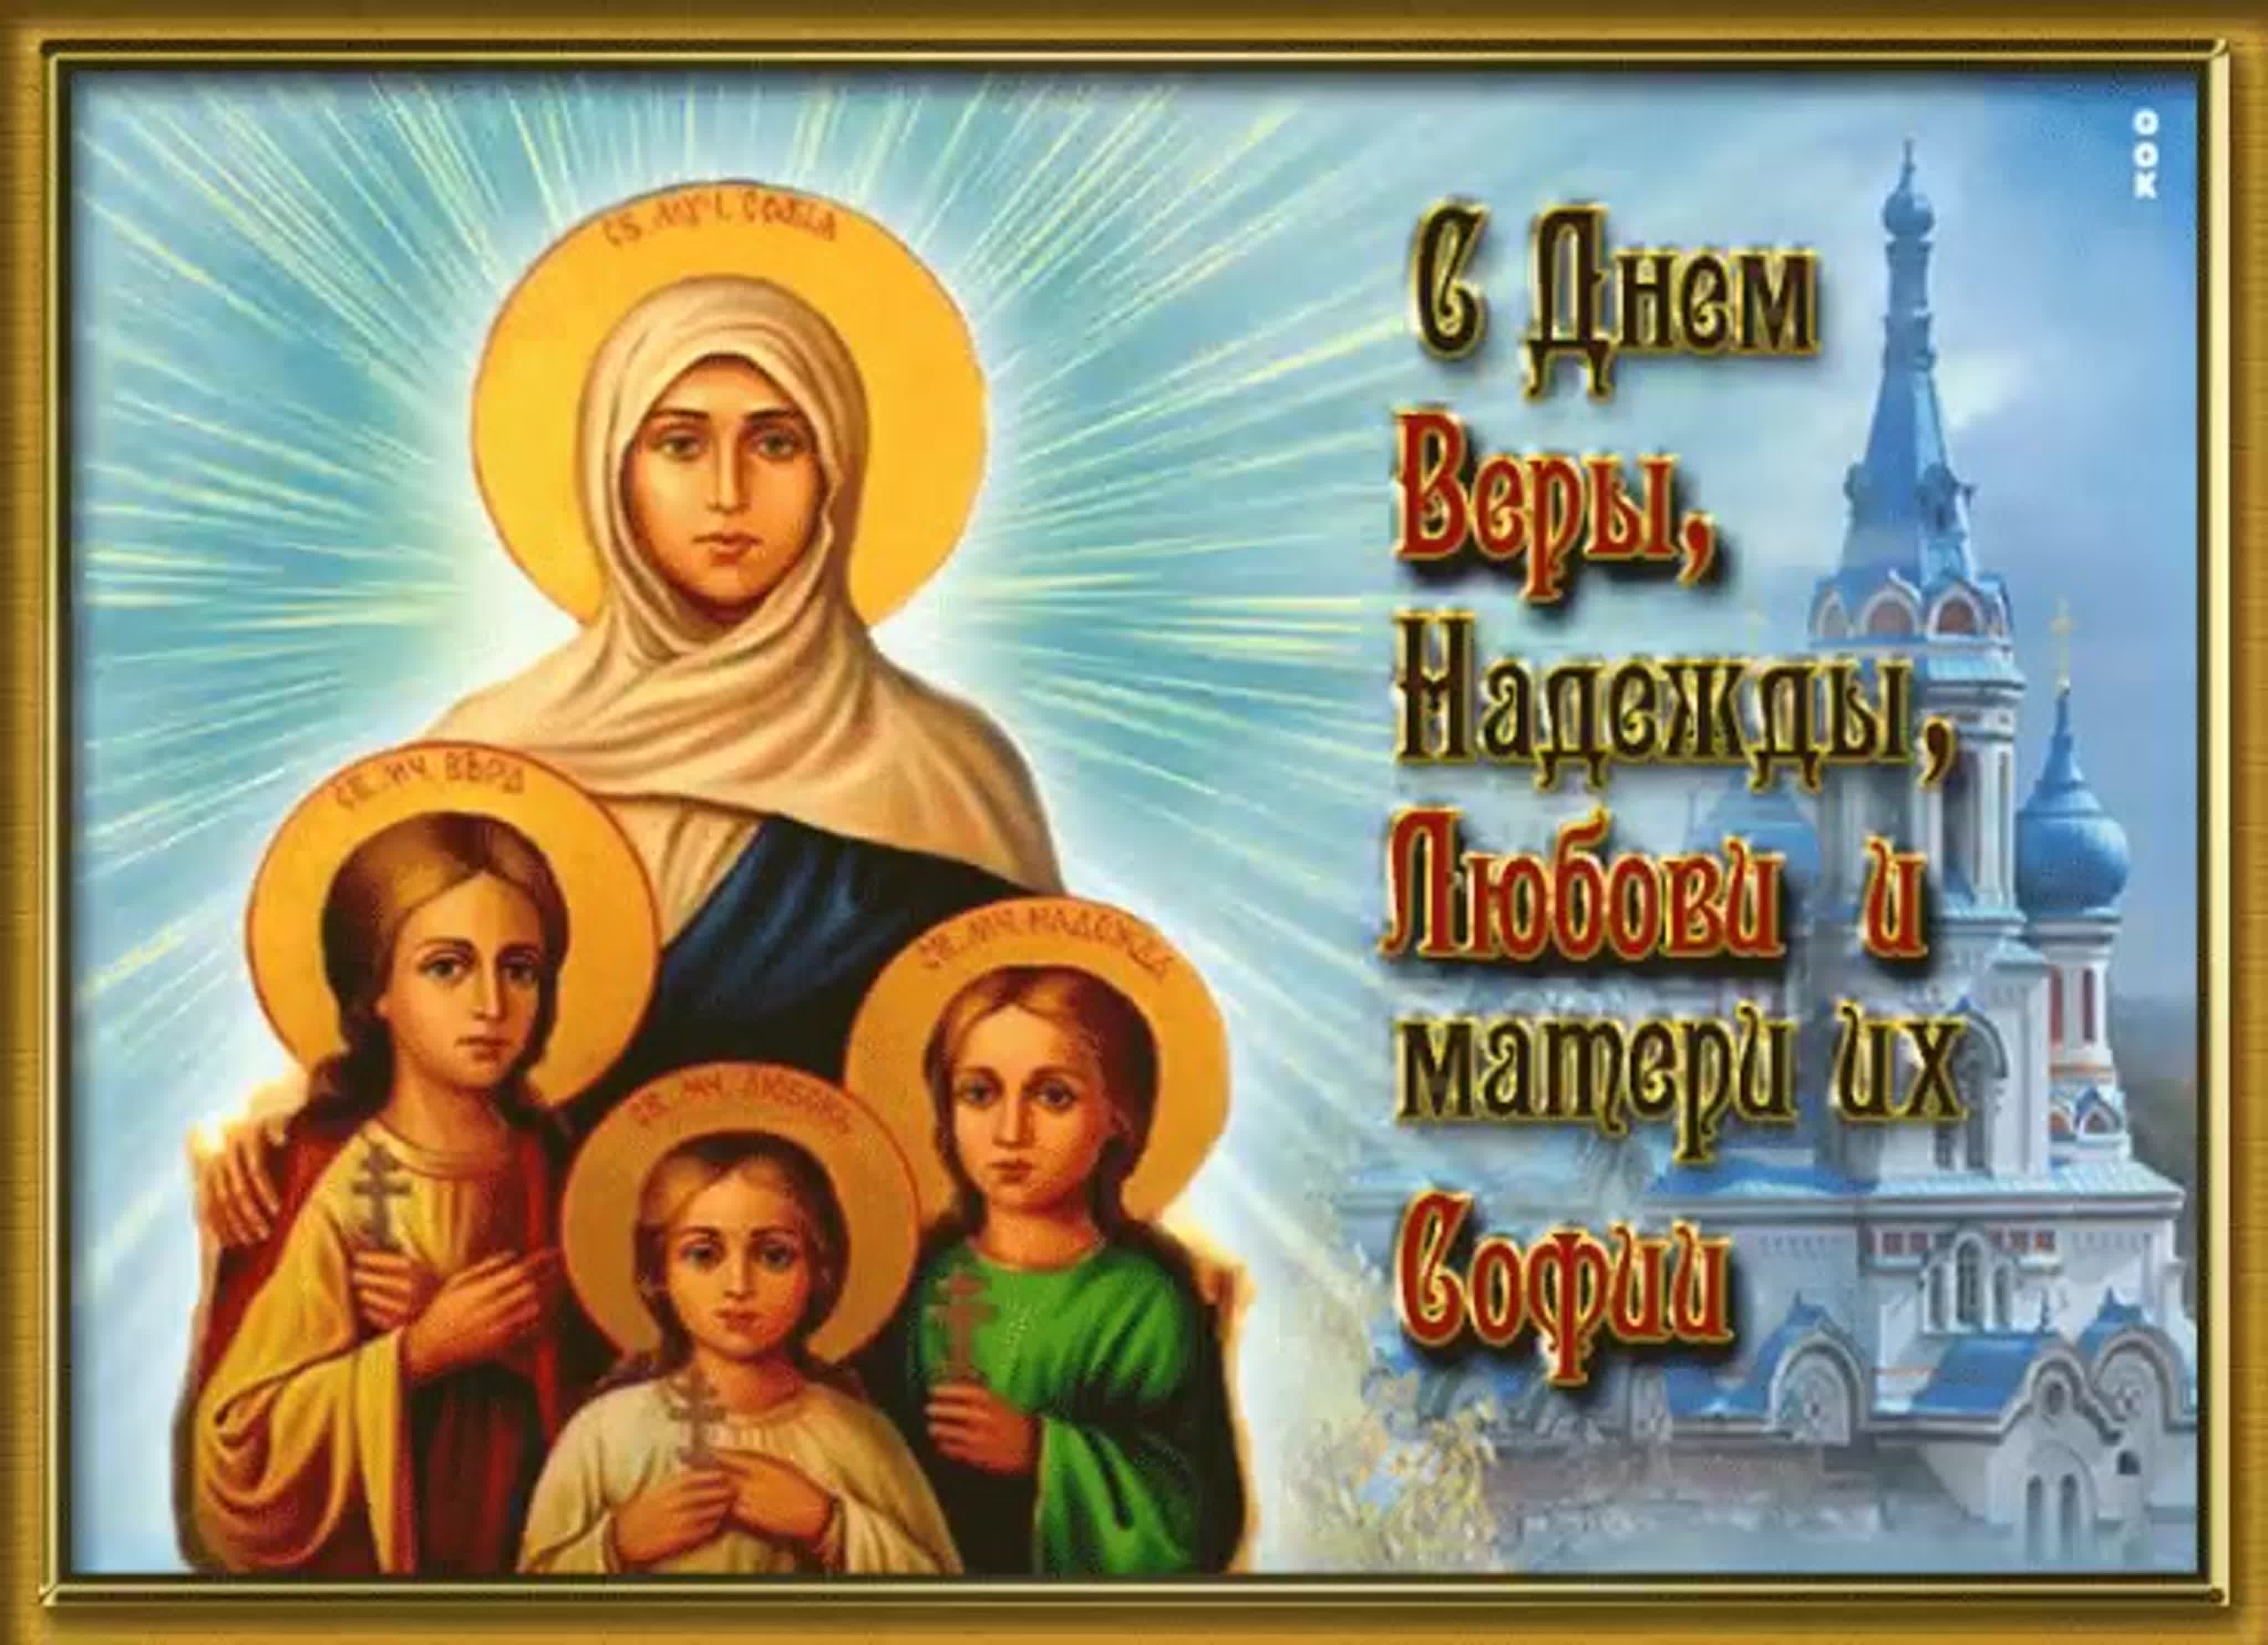 С днем святых мучениц веры надежды Любови и матери их Софии